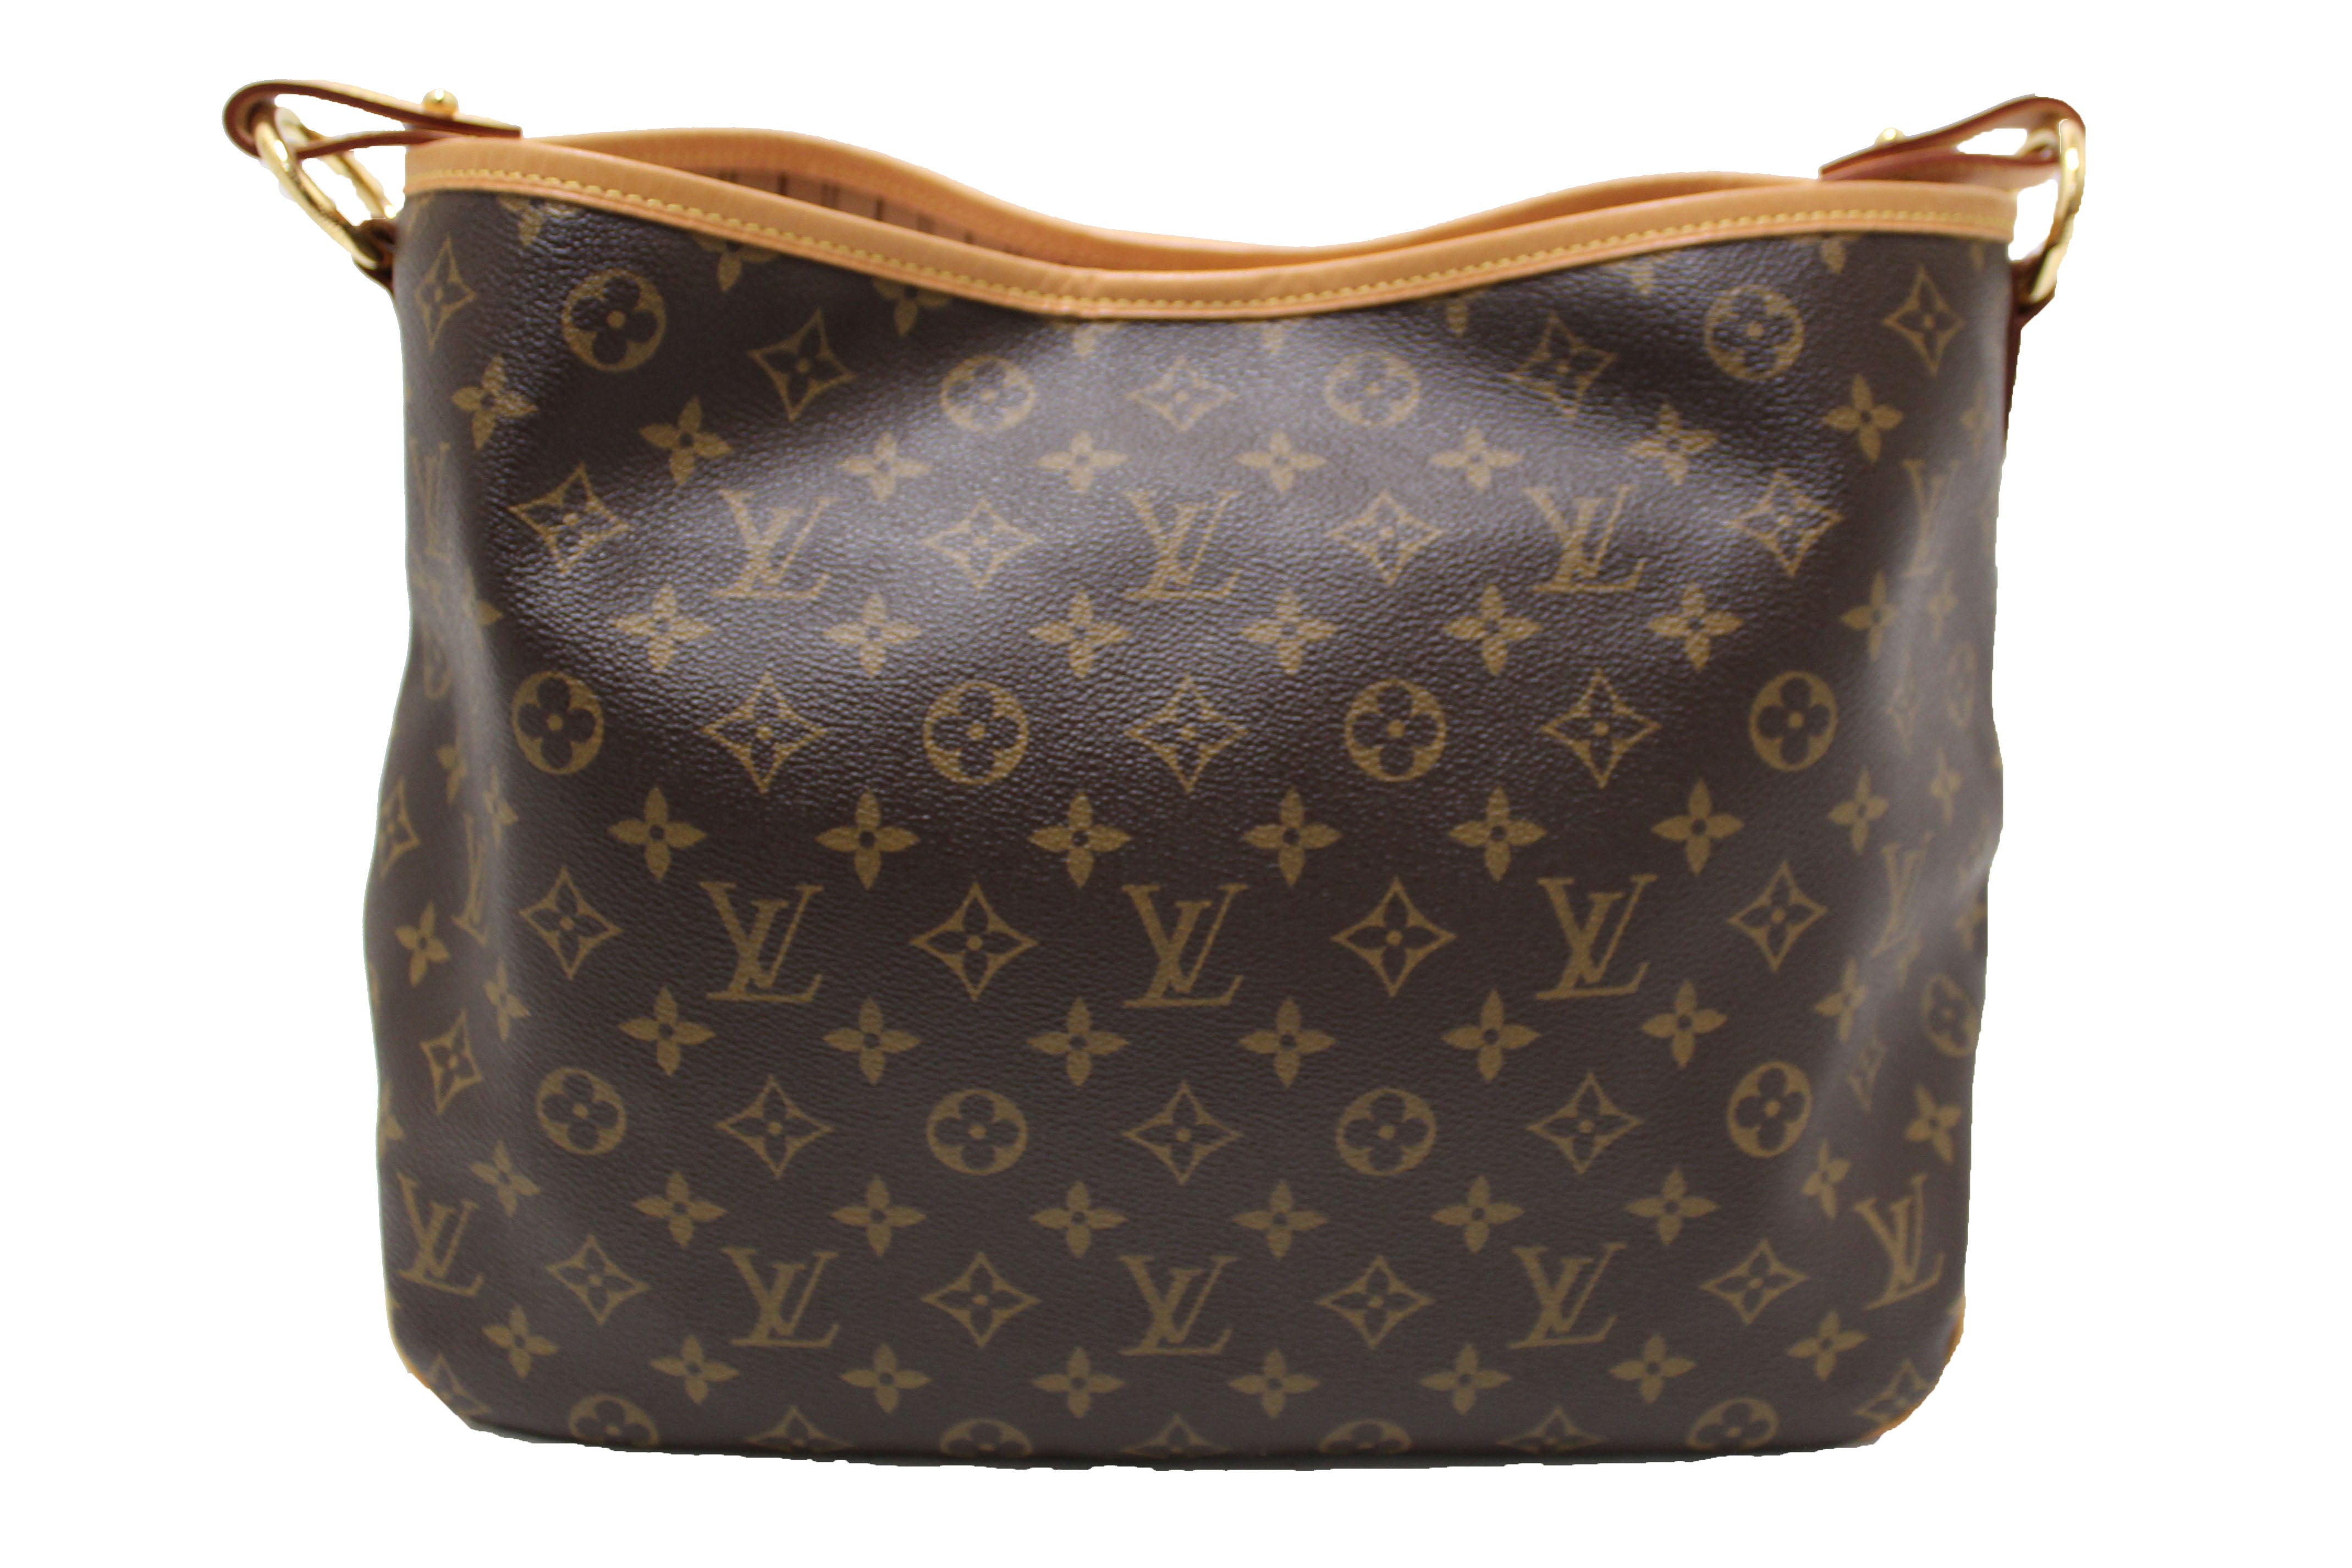 Authentic Louis Vuitton Classic Monogram Delightful PM Hobo Shoulder Bag